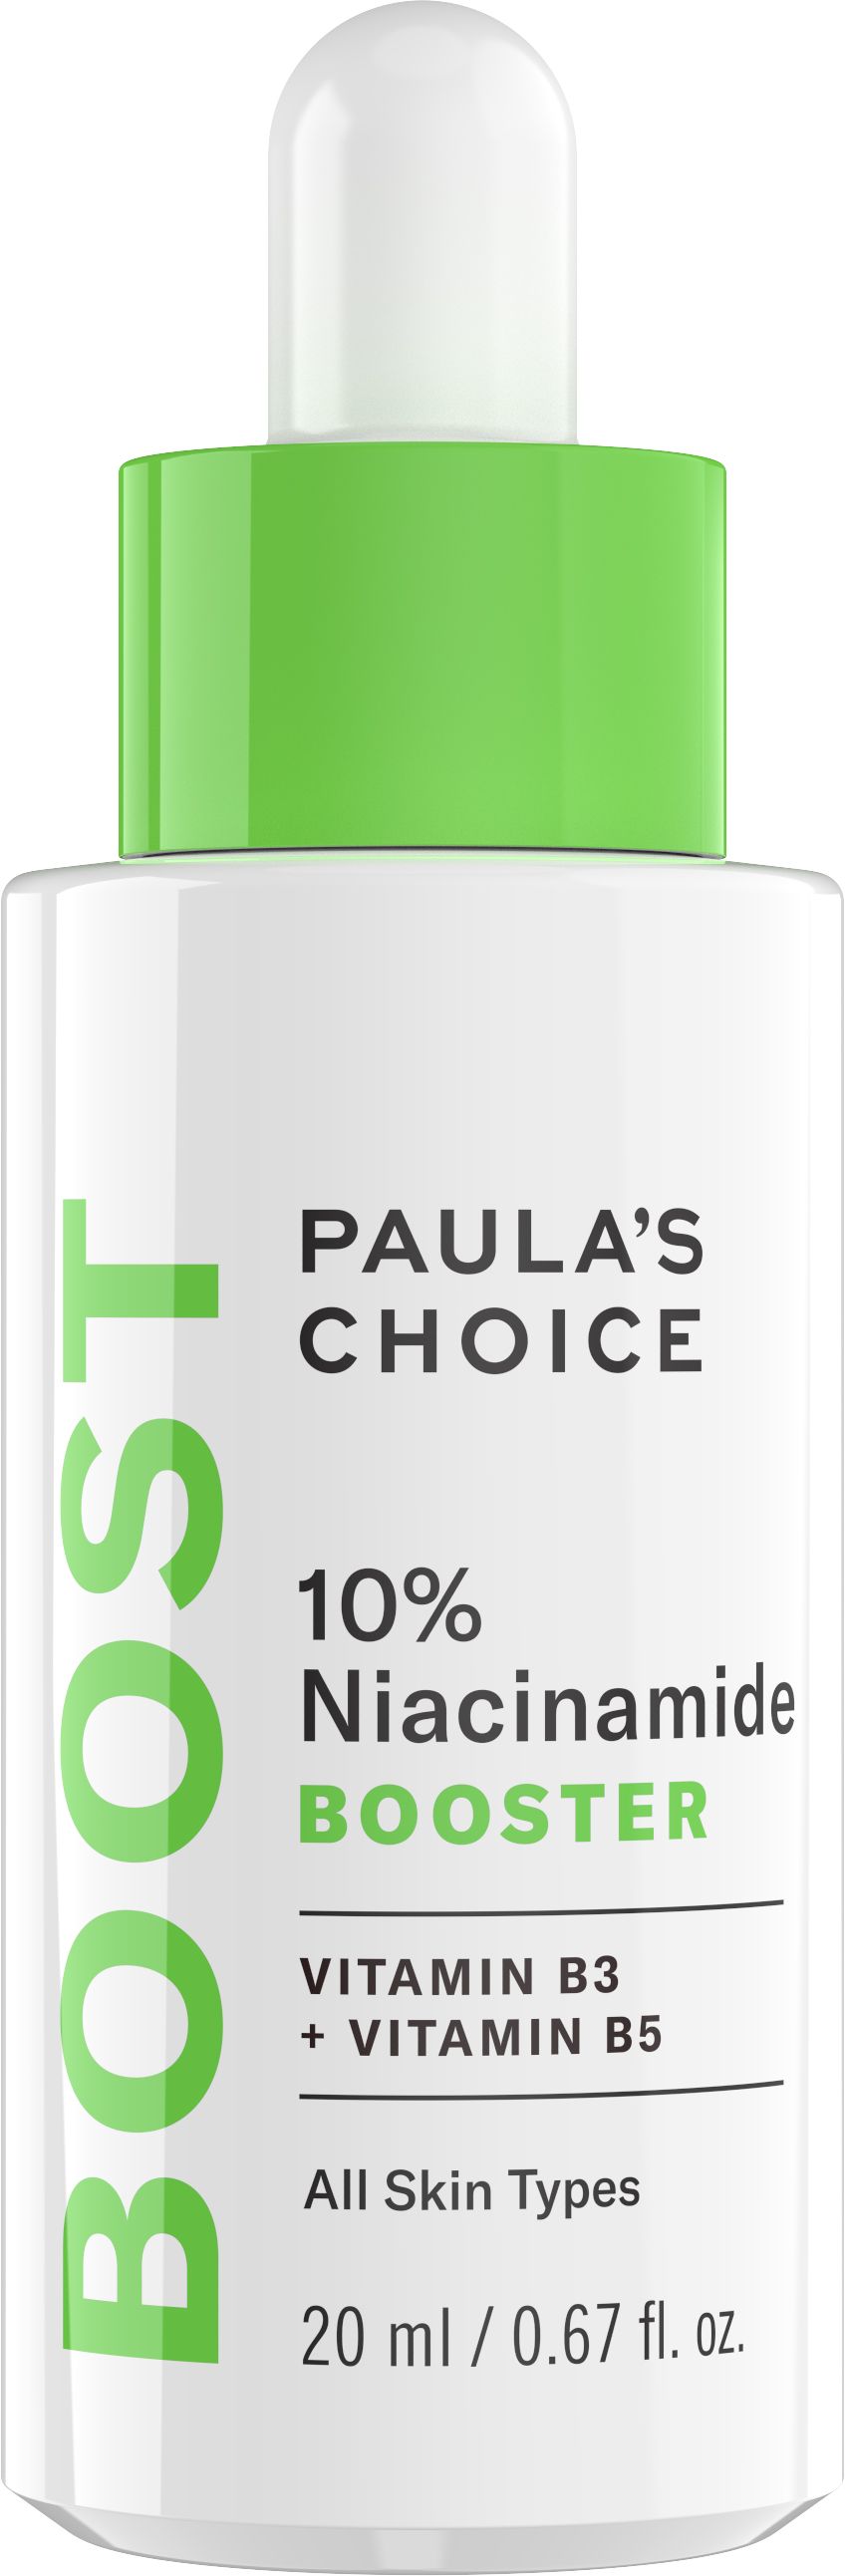 Paula's Choice 10% Niacinamide Booster | Paula's Choice (AU, CA & US)